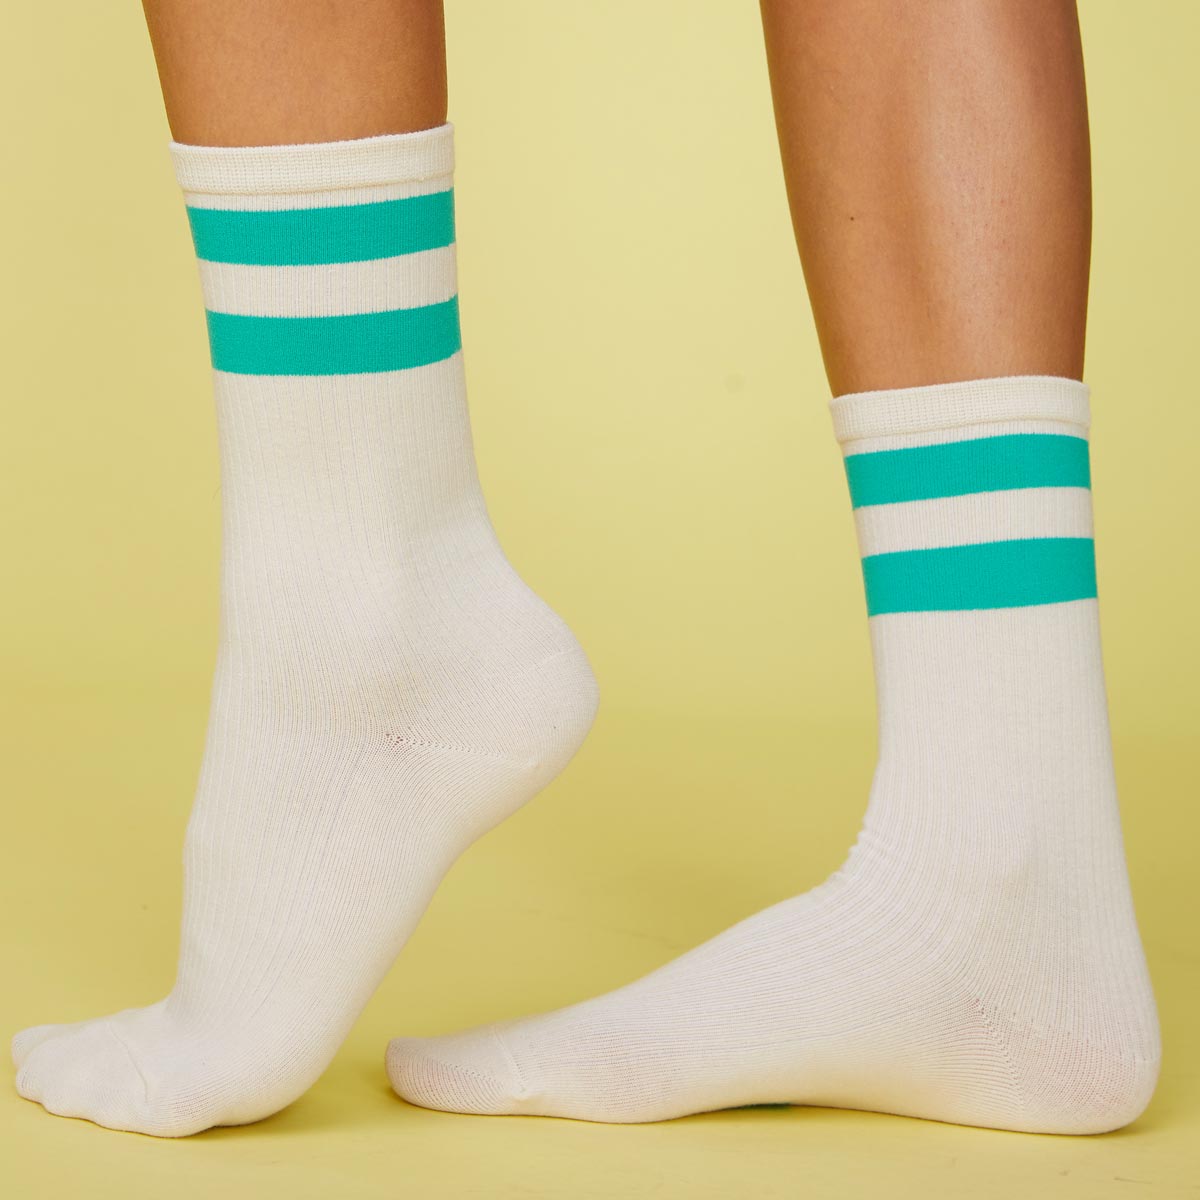 Side view of model's feet wearing the stripe socks in peacock green.